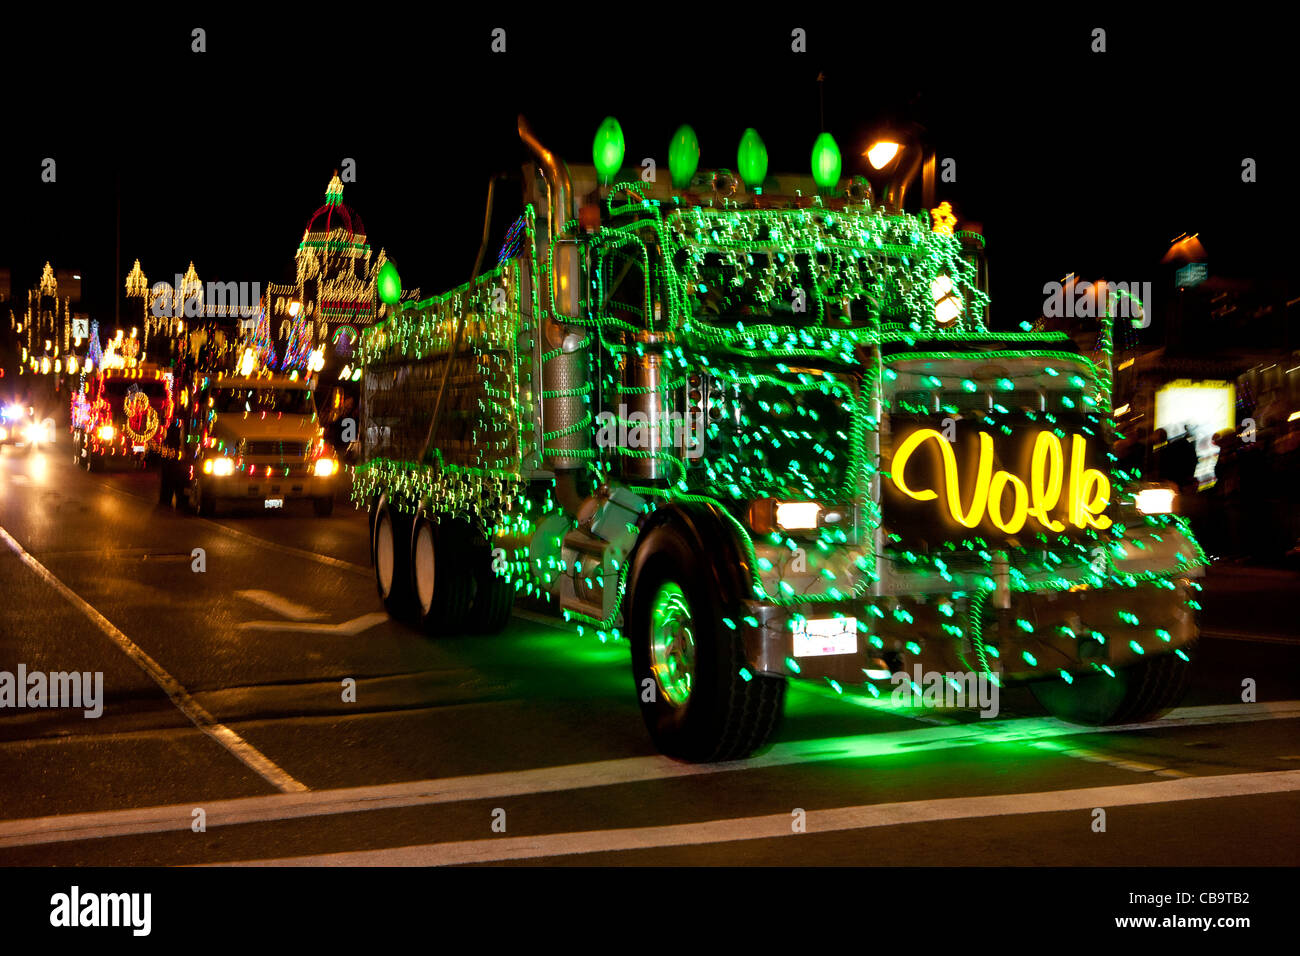 2011 jährliche Weihnachten beleuchtet LKW Parade durch die Innenstadt von Victoriia-Victoria, British Columbia, Kanada. Stockfoto